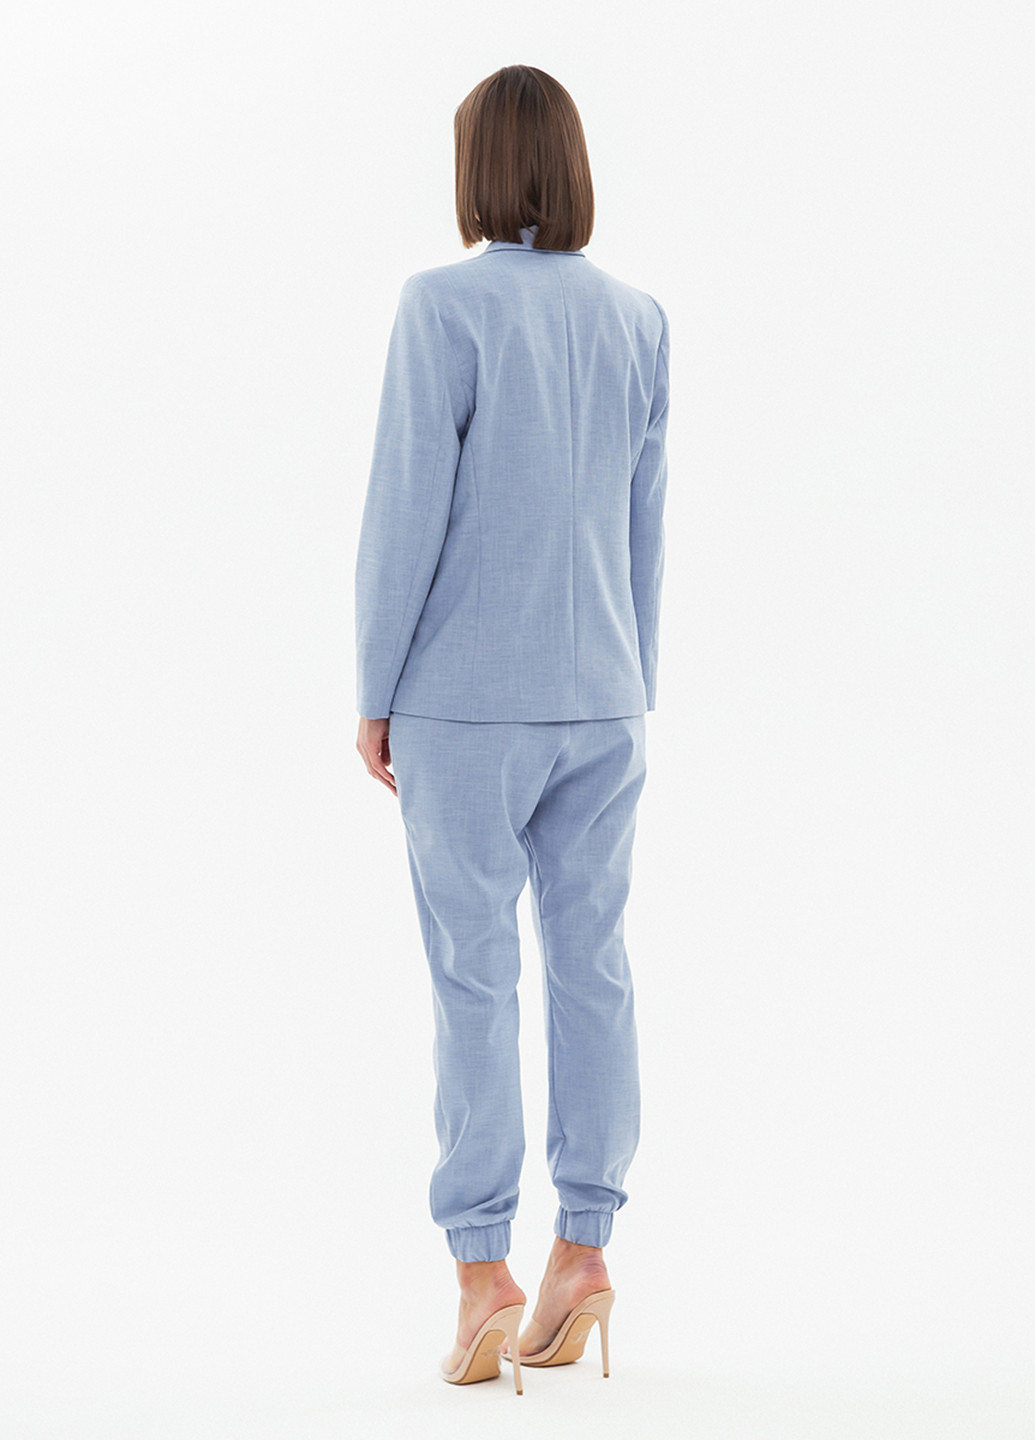 Костюм (жакет, брюки) BGL Комплект (блейзер и брюки) брючный однотонный голубой деловой костюмная, хлопок